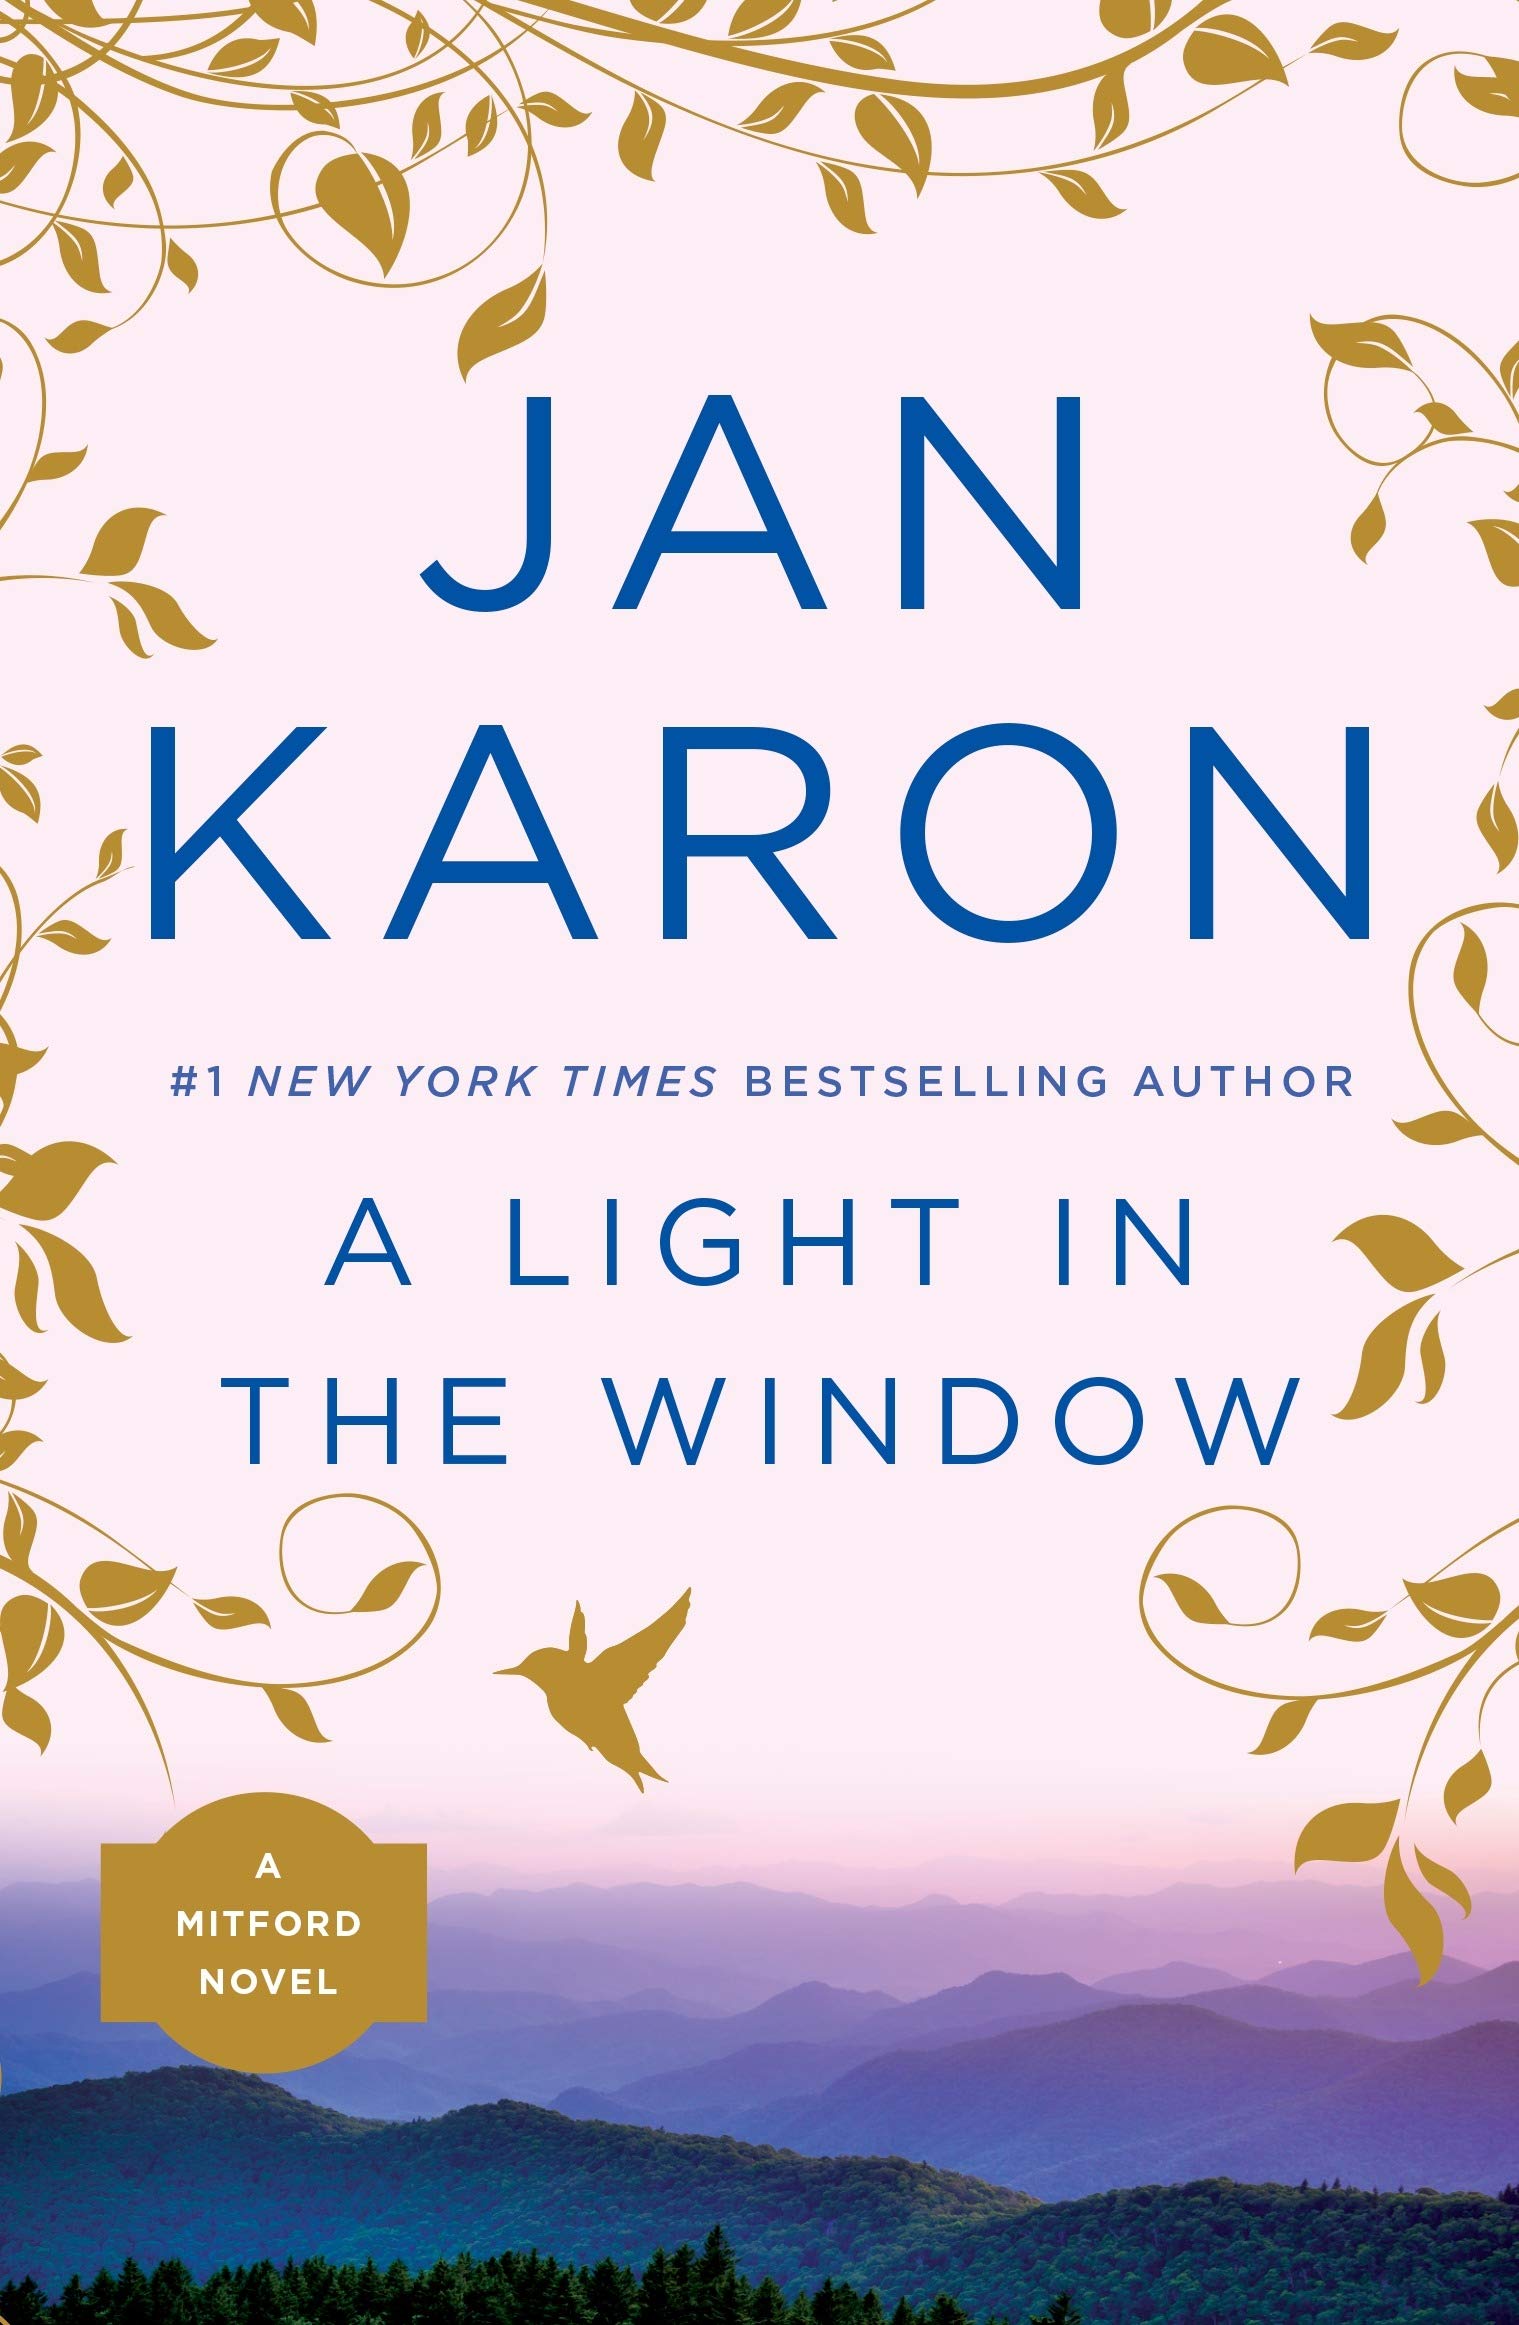 Livre ISBN 0140254544 A Light in the Window (Jan Caron)